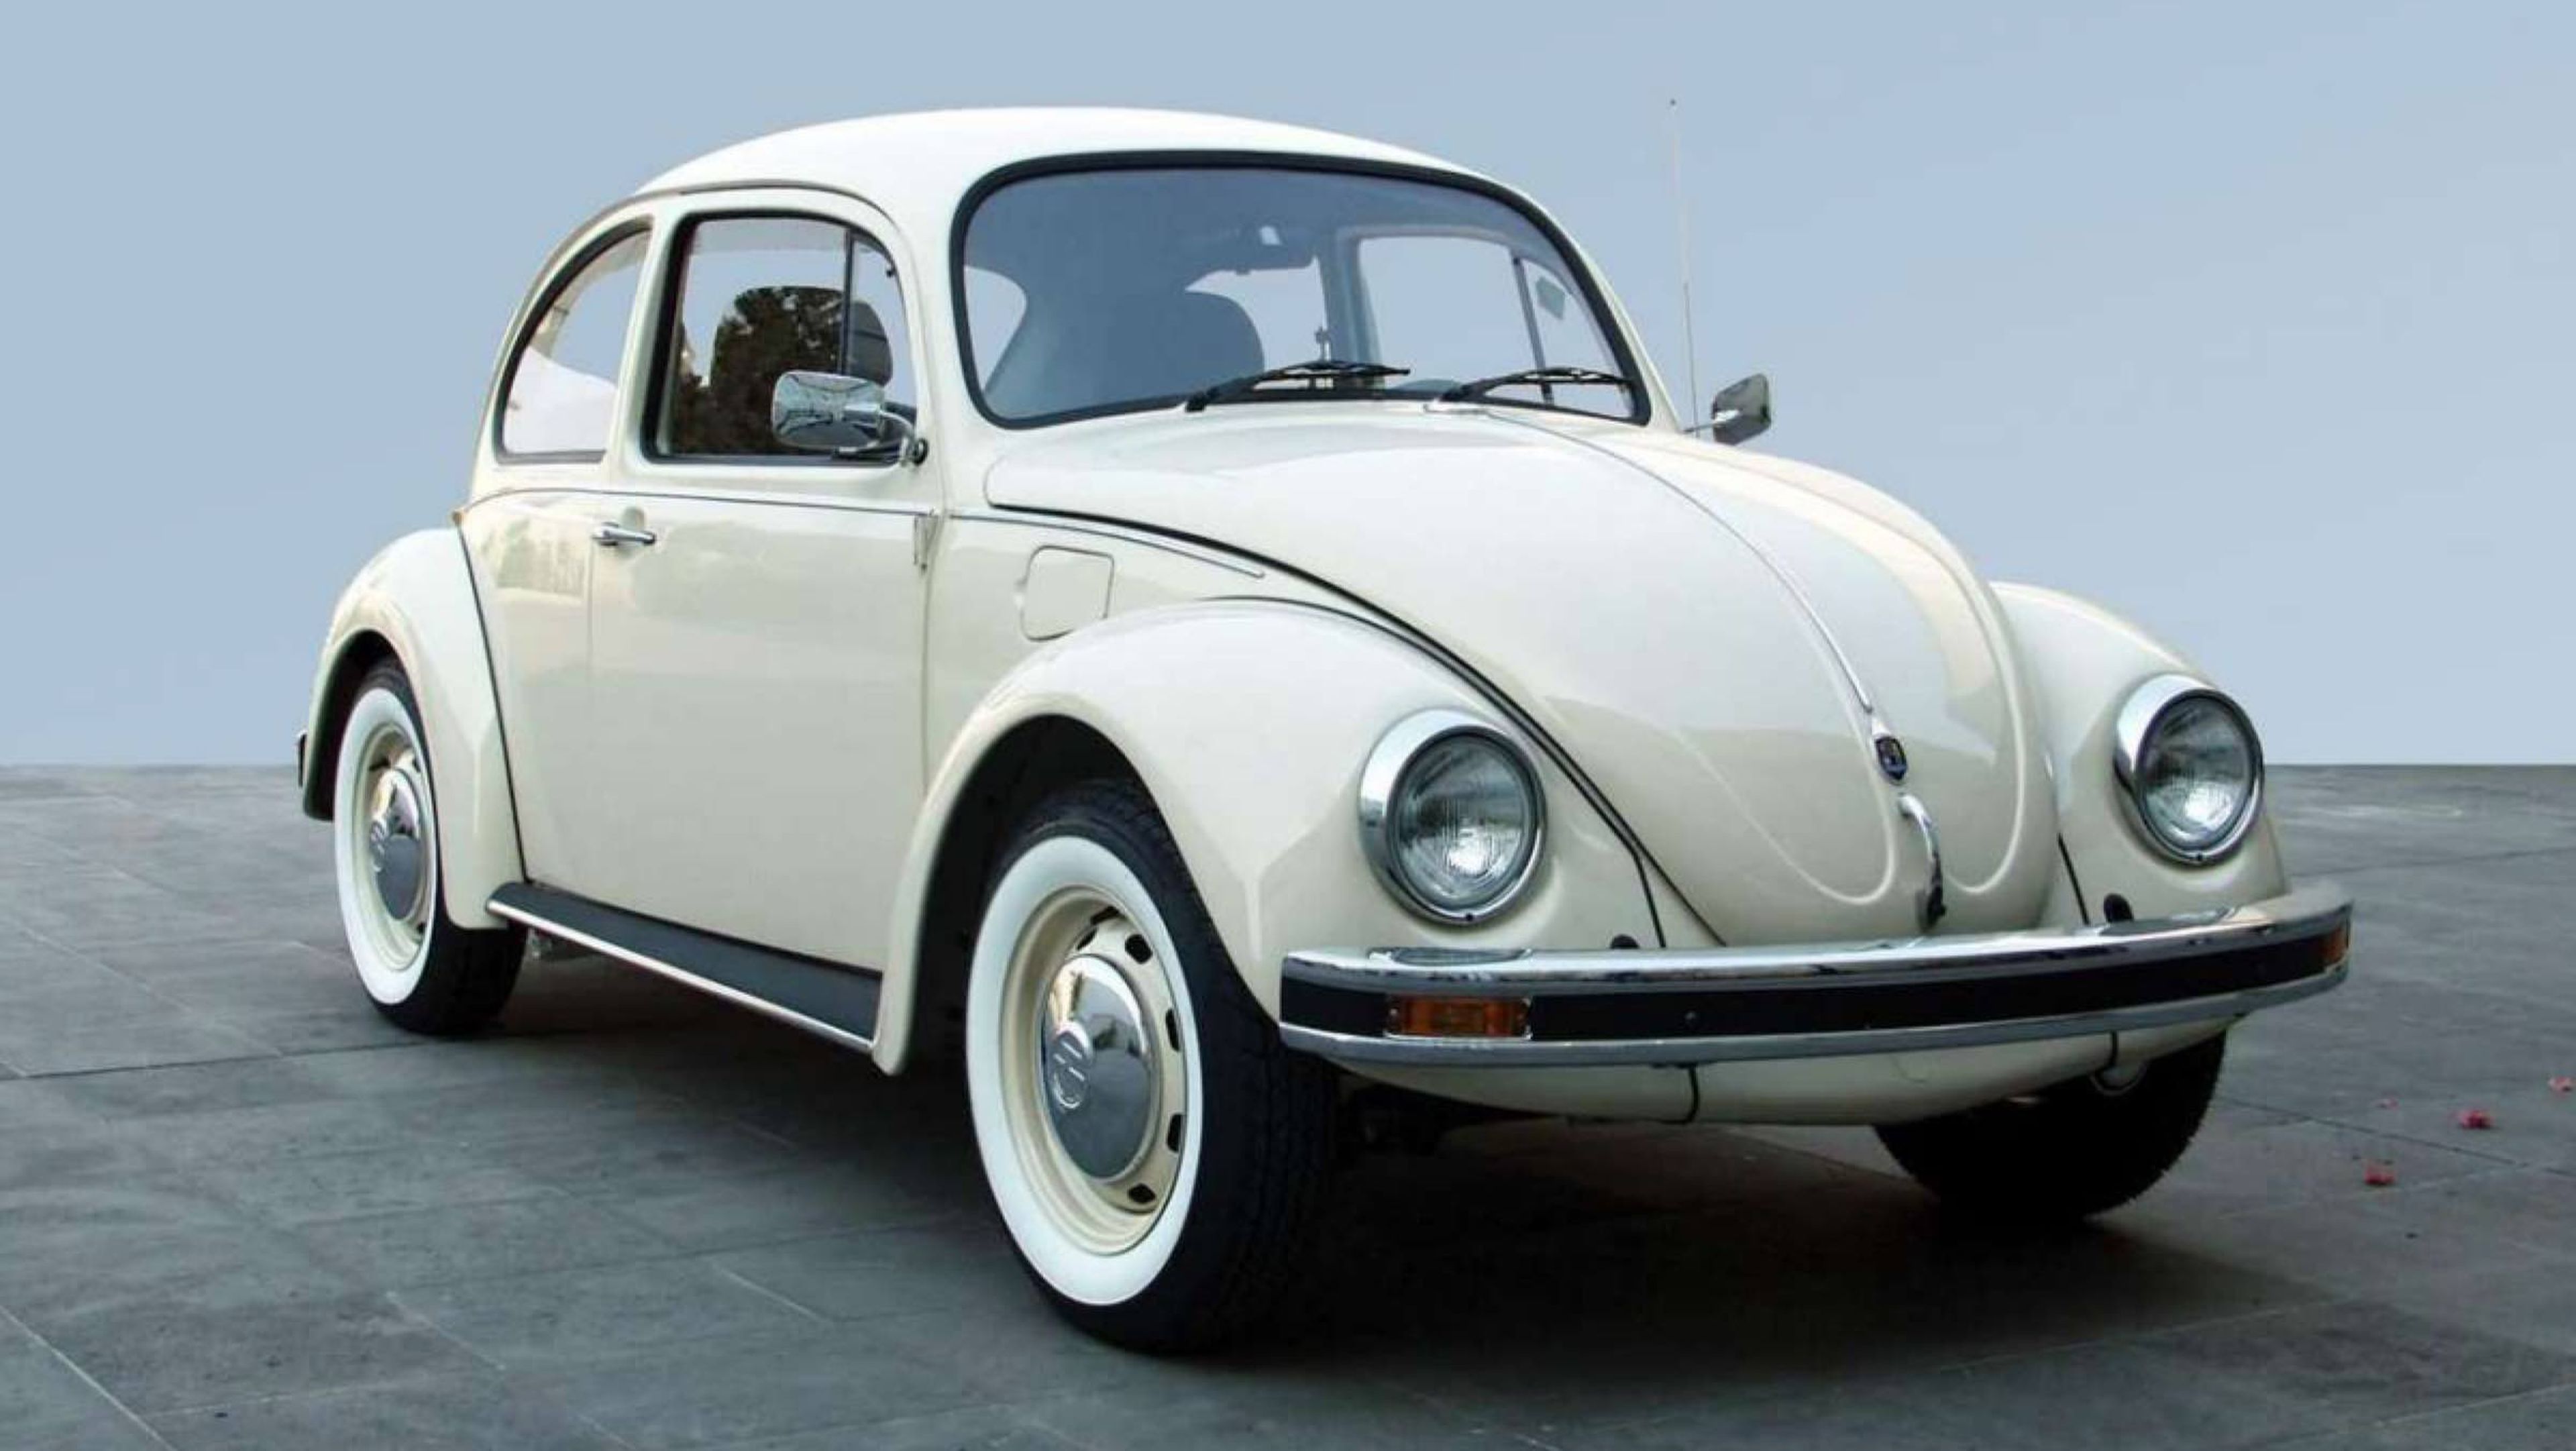 Volkswagen Beetle Last Edition